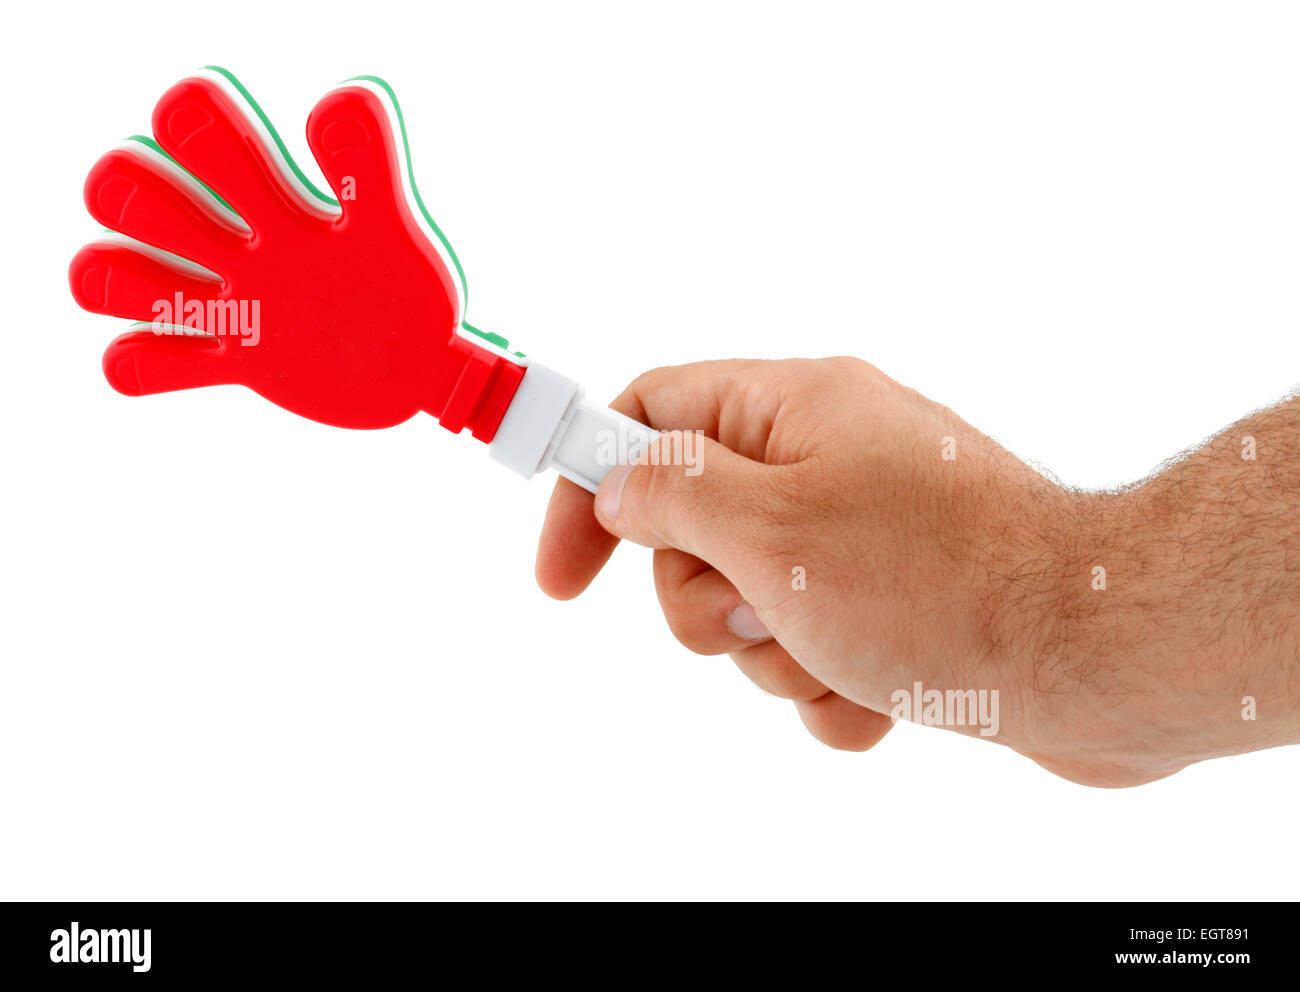 Juguete en la forma de la mano para hacer ruido. Hecha de plástico y los colores de la bandera italiana. Foto de stock